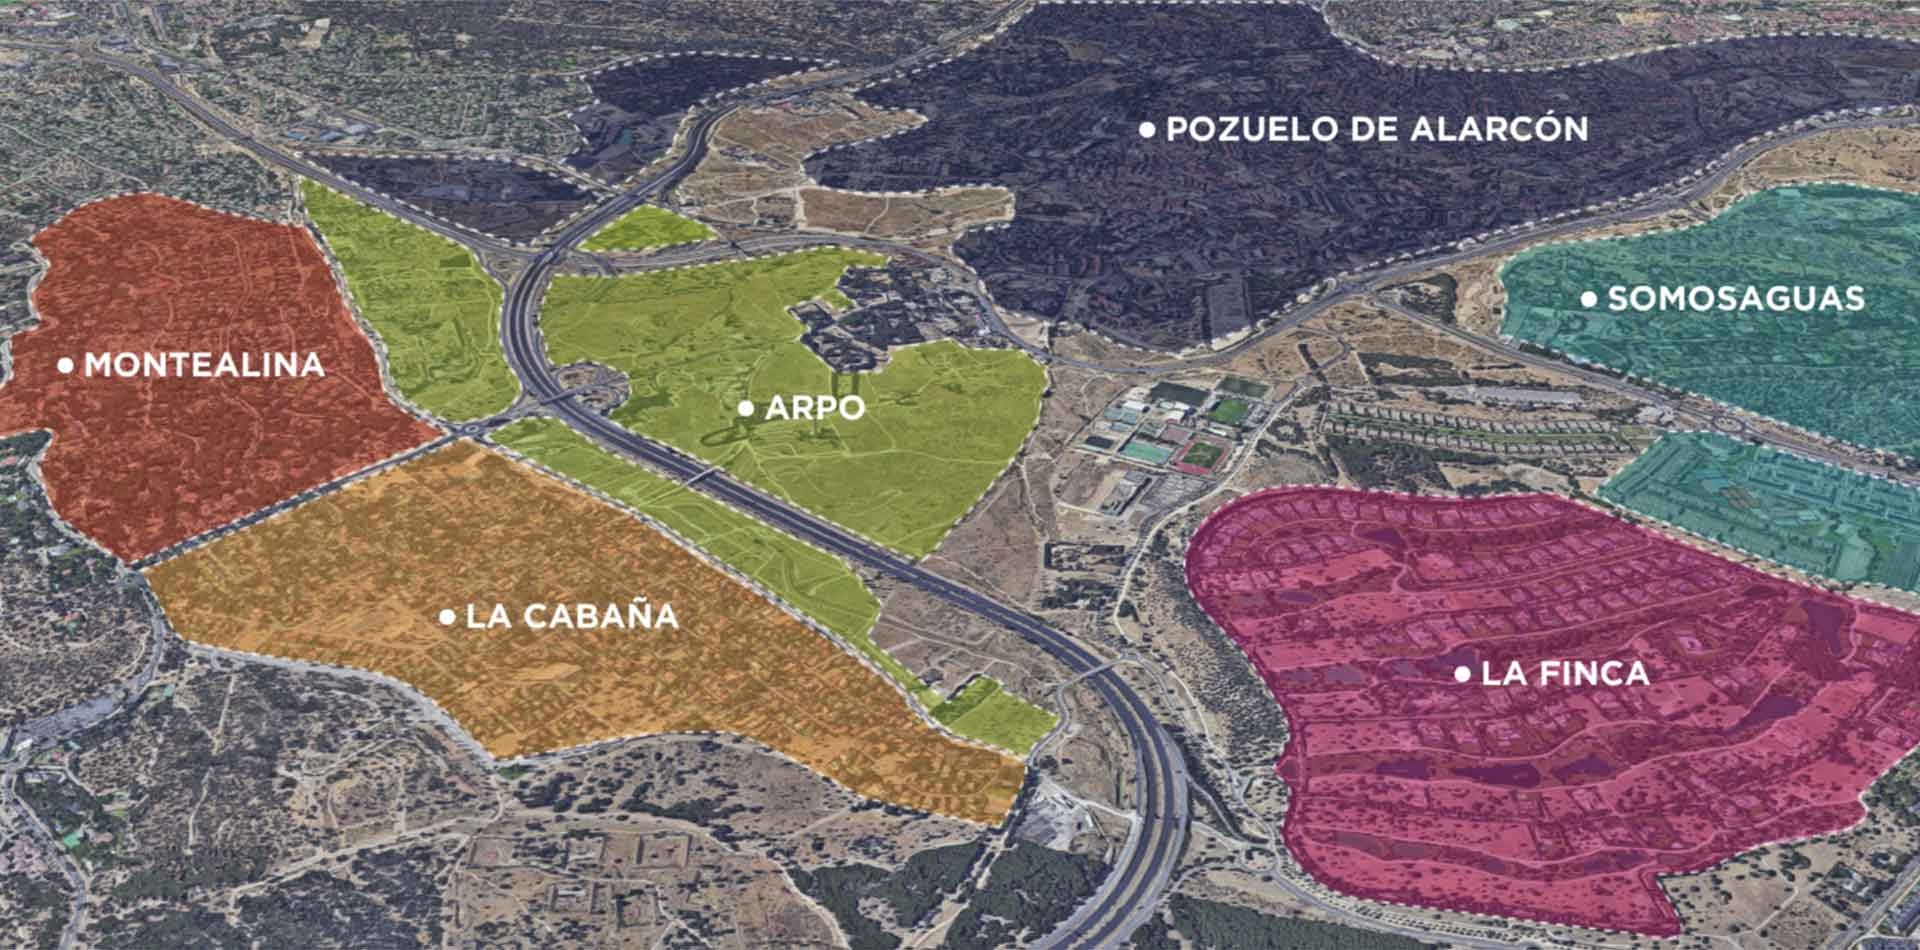 Mapa zonificación ARPO - Pozuelo